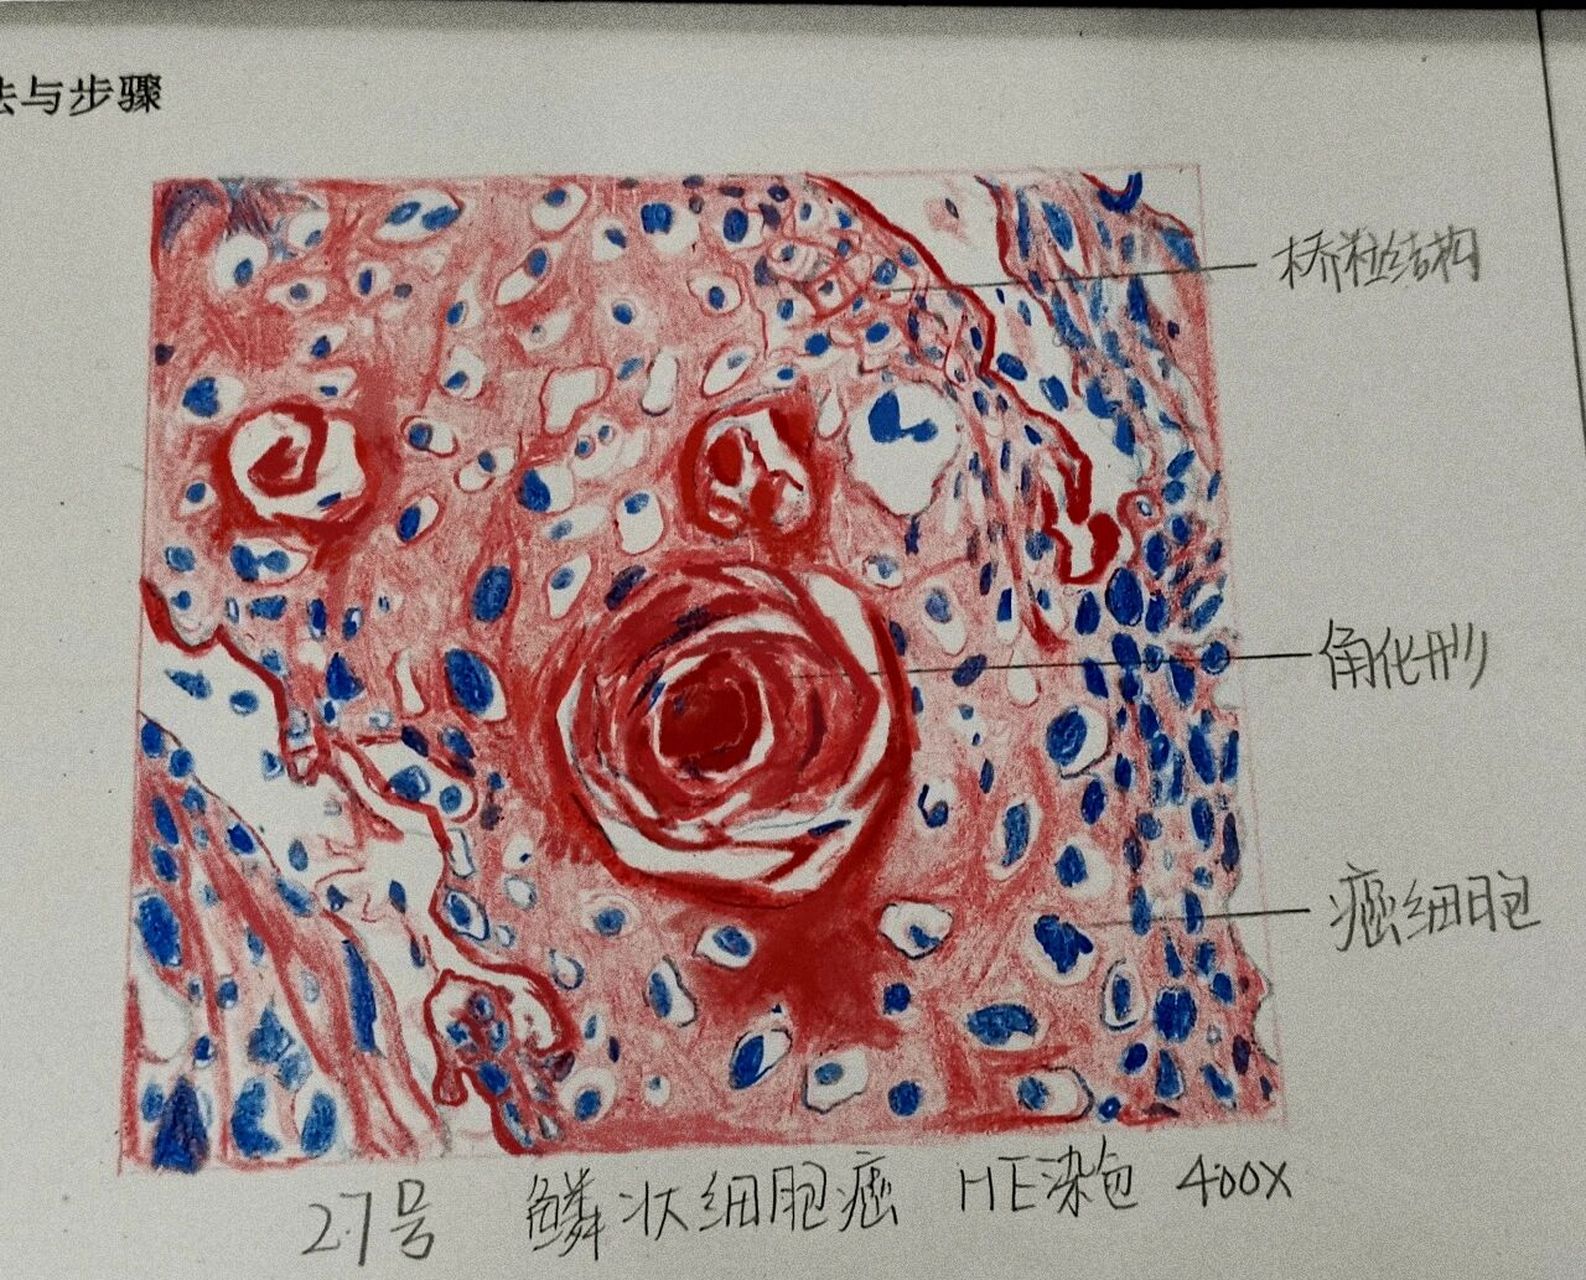 癌红蓝铅笔手绘图图片